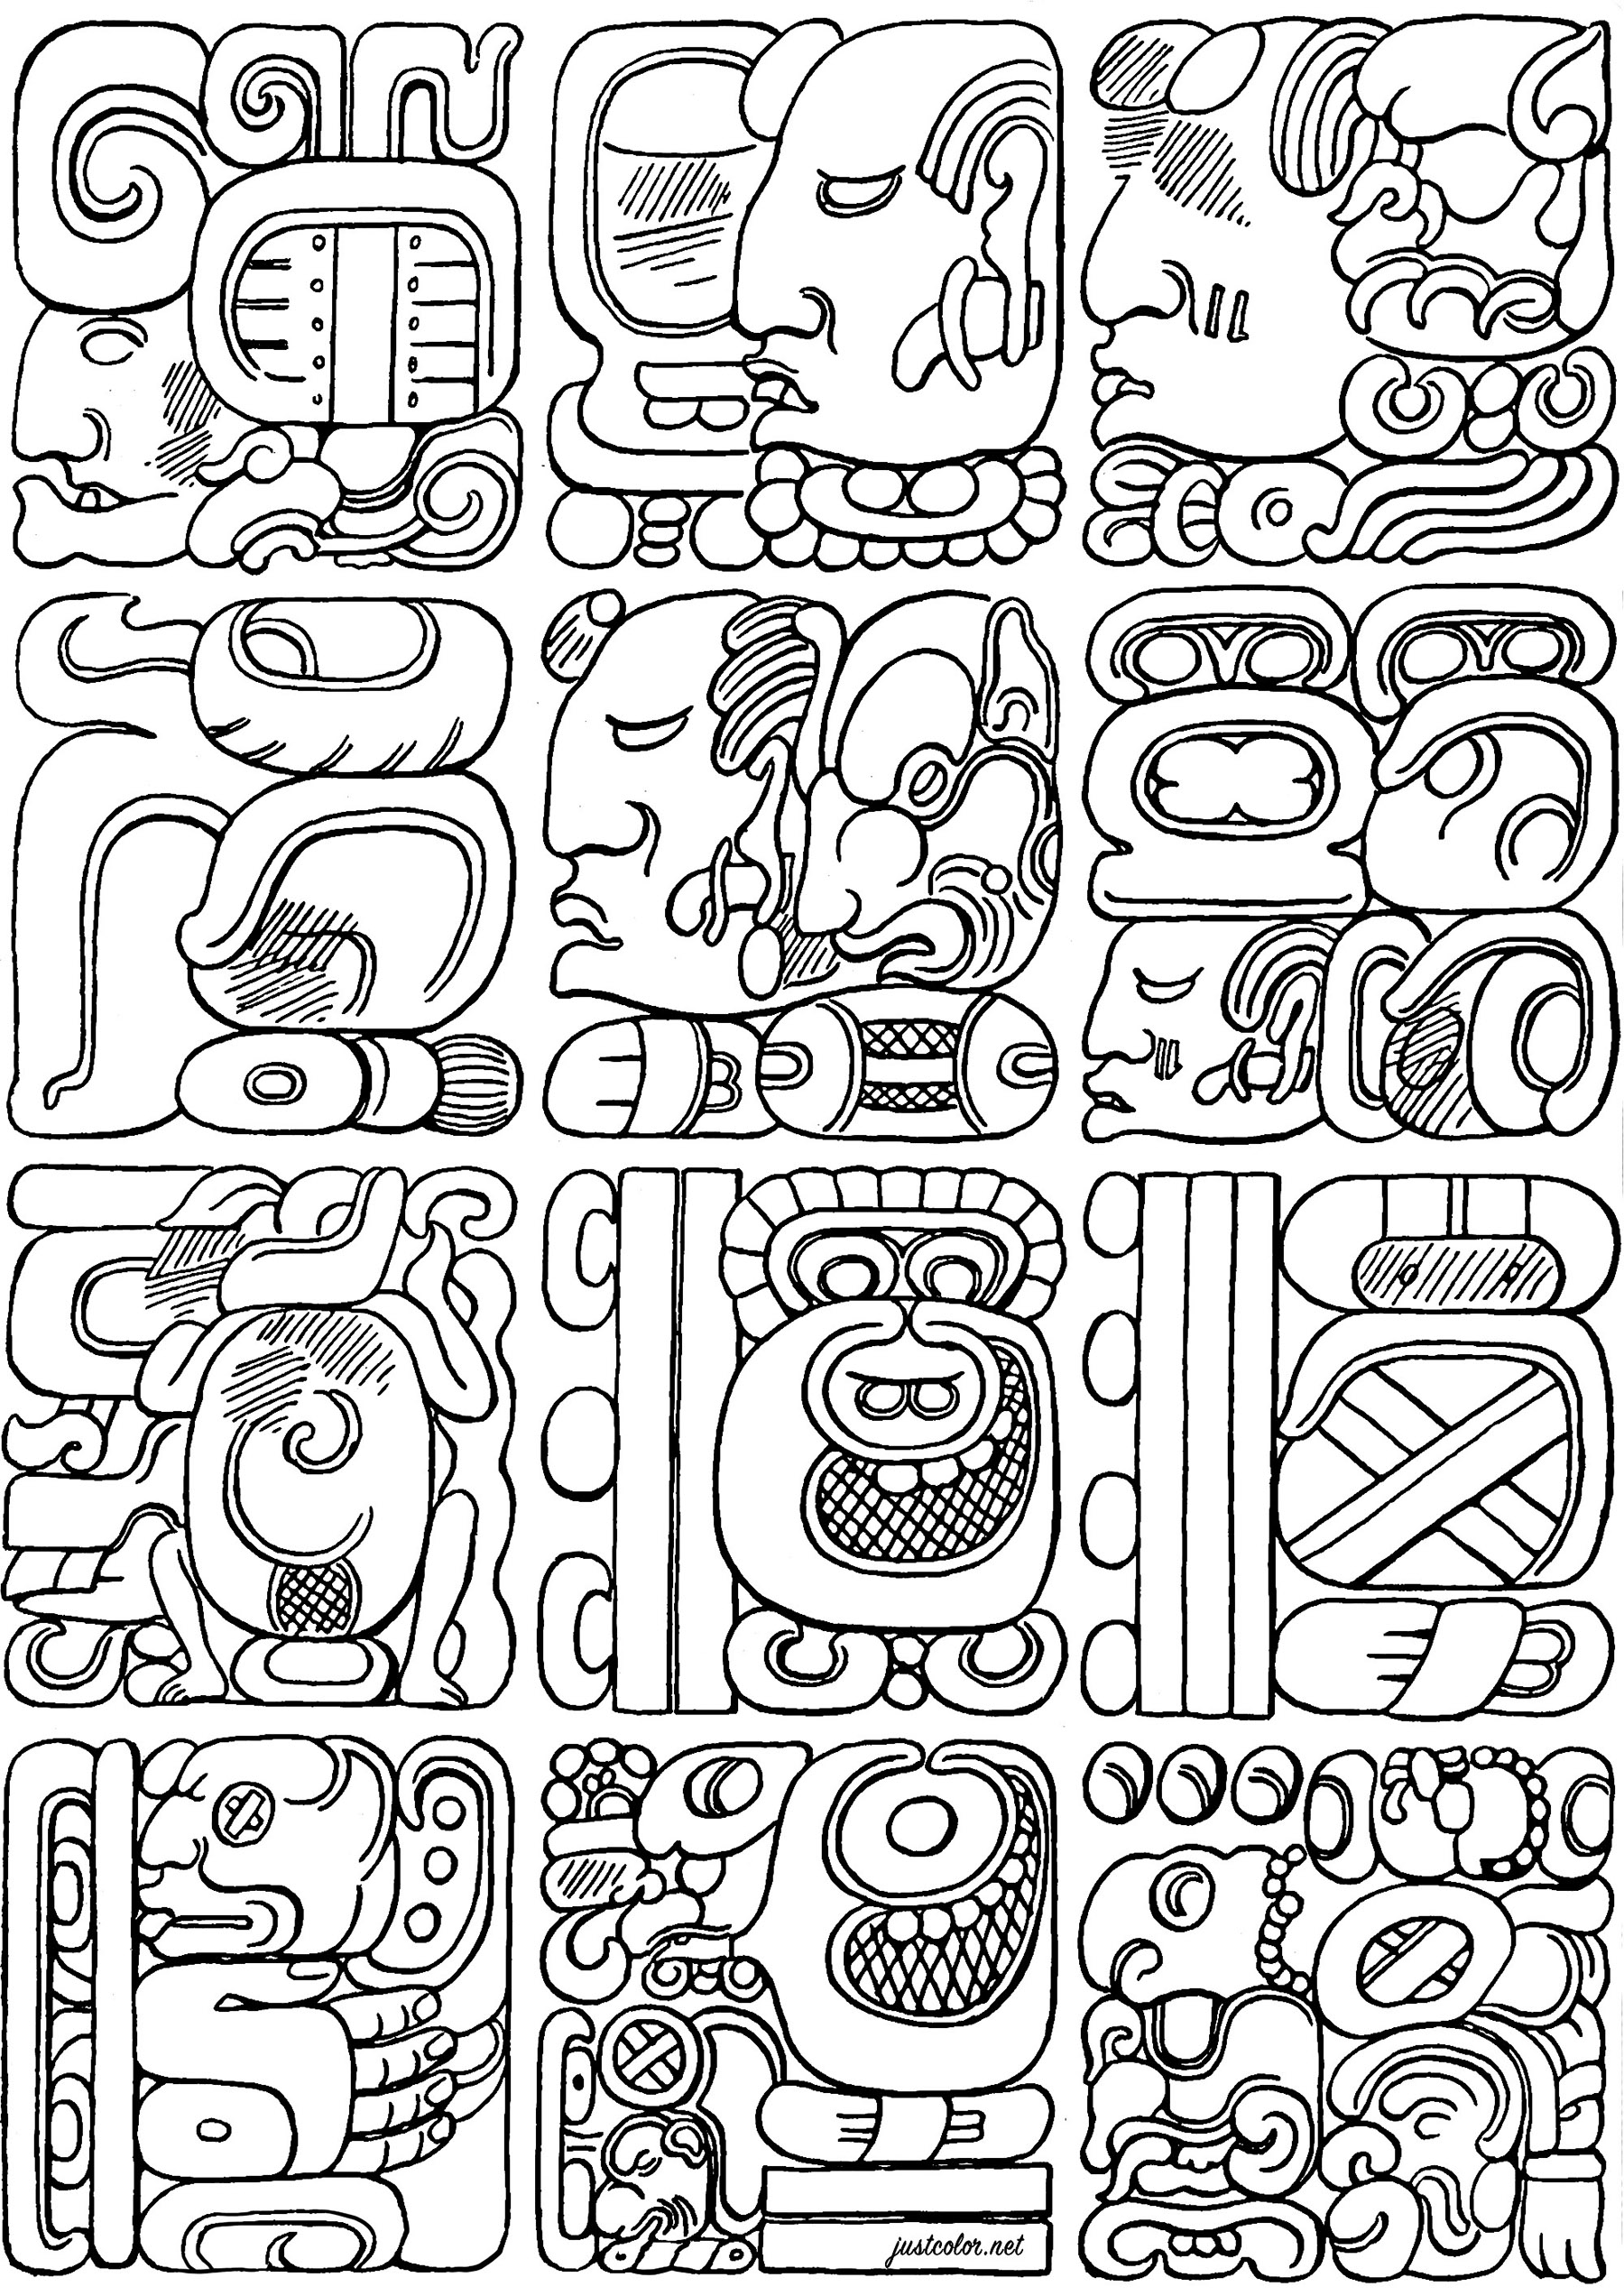 Coloriage créé à partir d'authentiques Glyphes Mayas . Les glyphes mayas constituent l'un des rares systèmes d'écriture pleinement développés dans les Amériques précolombiennes, permettant la transcription des langues mayas avec une précision presque parfaite.À travers leurs complexes inscriptions glyphiques, les Mayas ont enregistré des événements historiques, des mythes, des mathématiques et des observations astronomiques qui continuent de fasciner les chercheurs aujourd'hui.